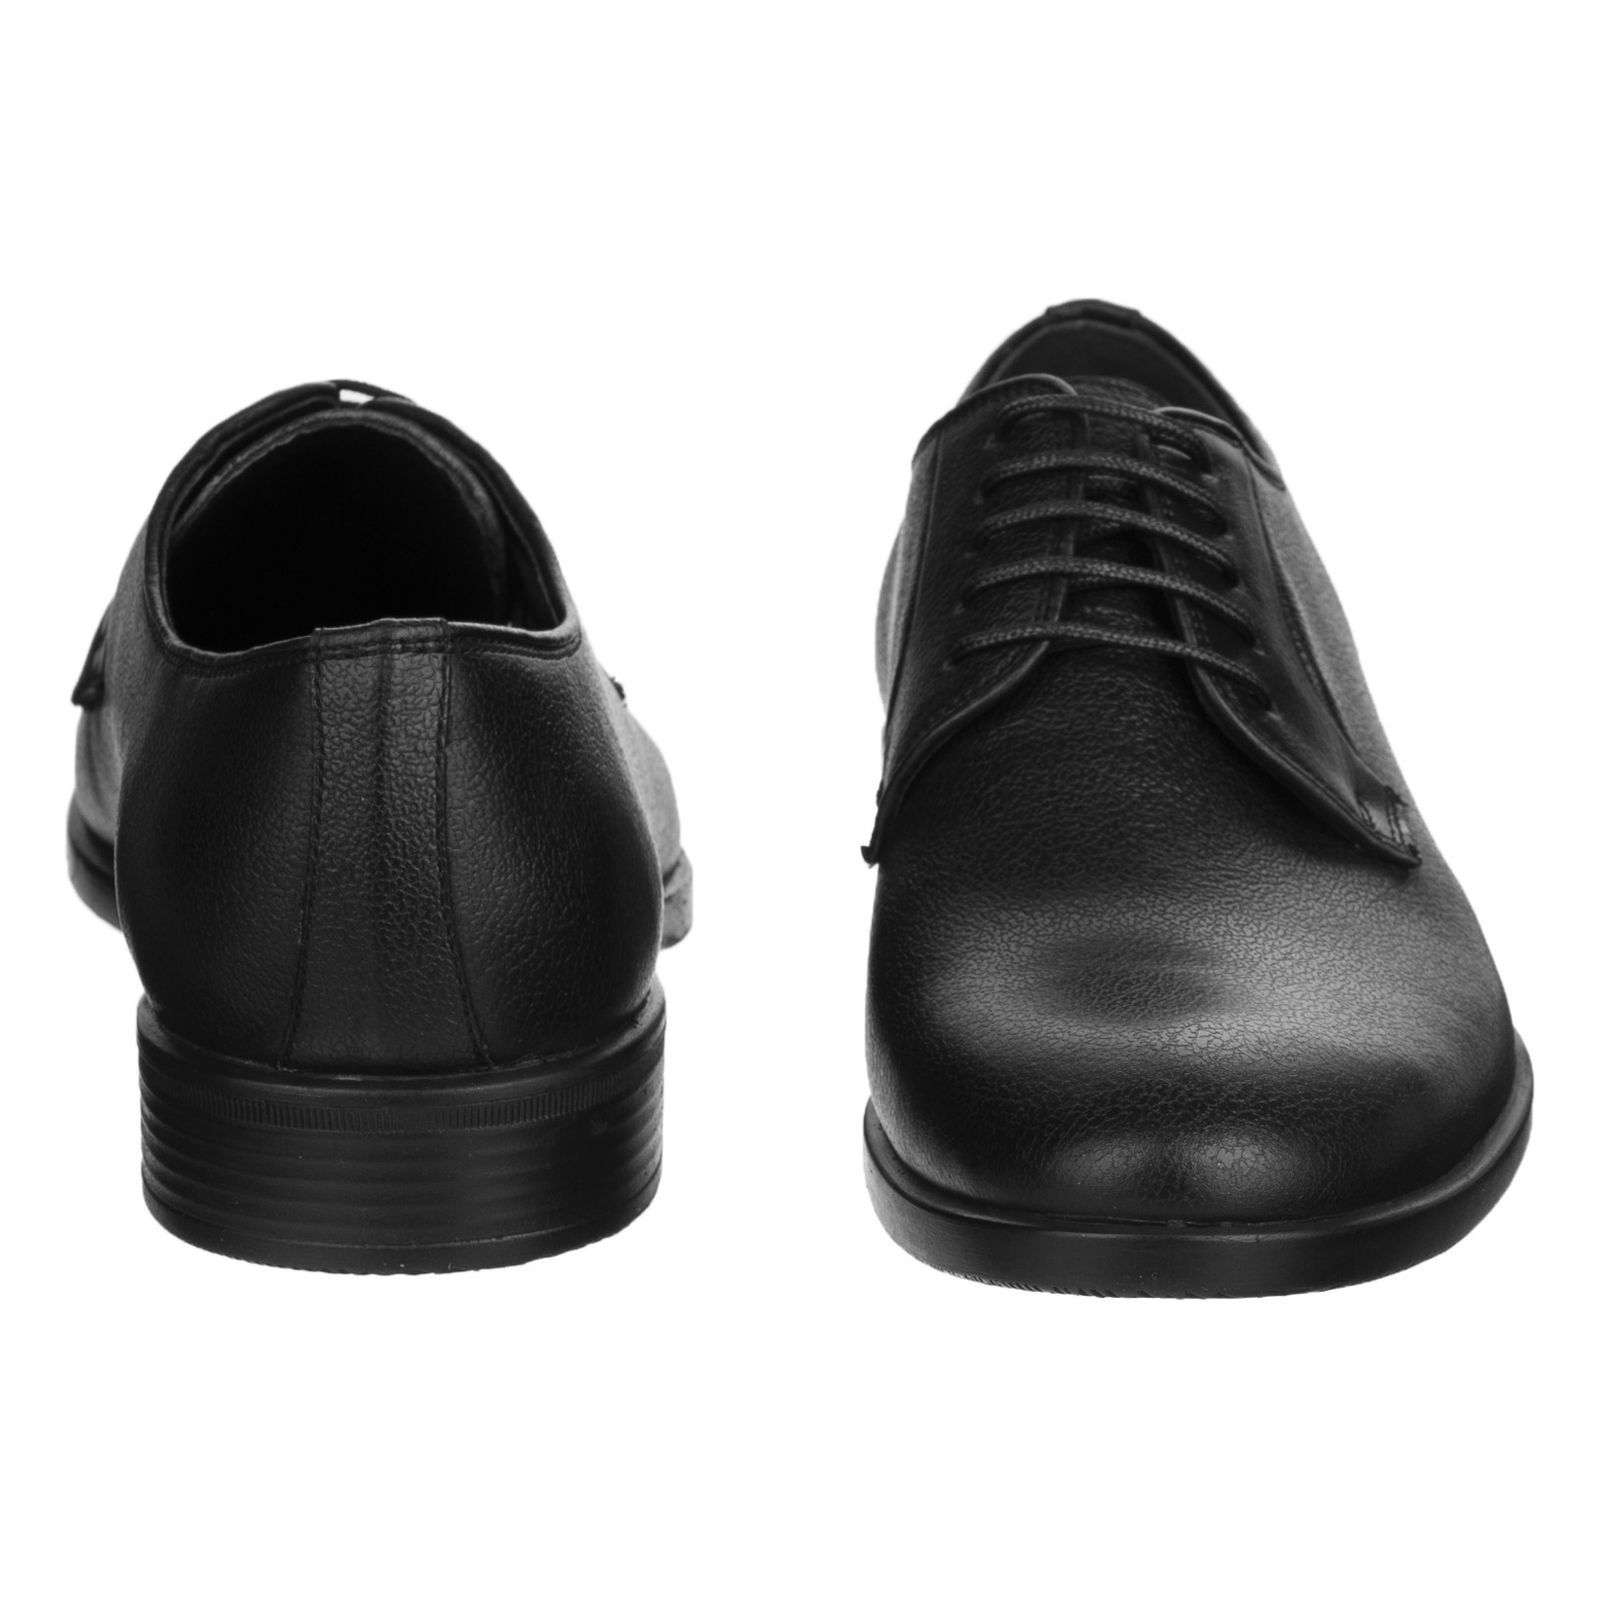 کفش مردانه گاندو مدل 503-99 - مشکی - 5